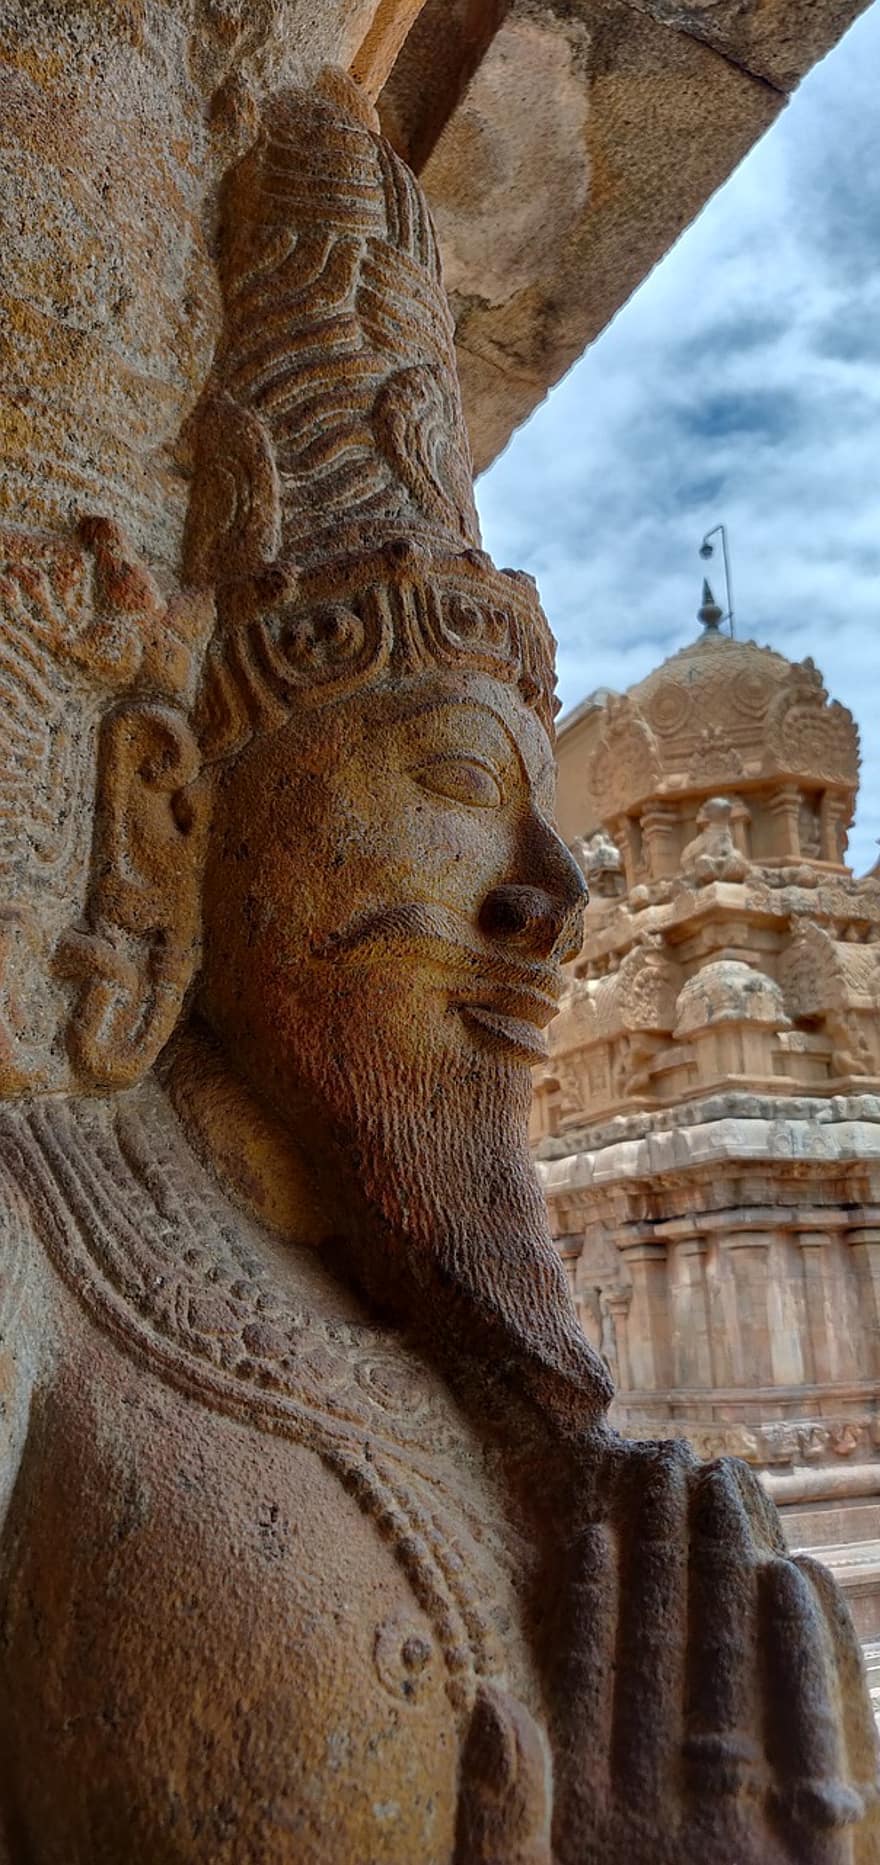 архітектура, скульптура, статуя, Індія, тамілнаду, історичний, храм, Шива, великий храм, танджавур, культур